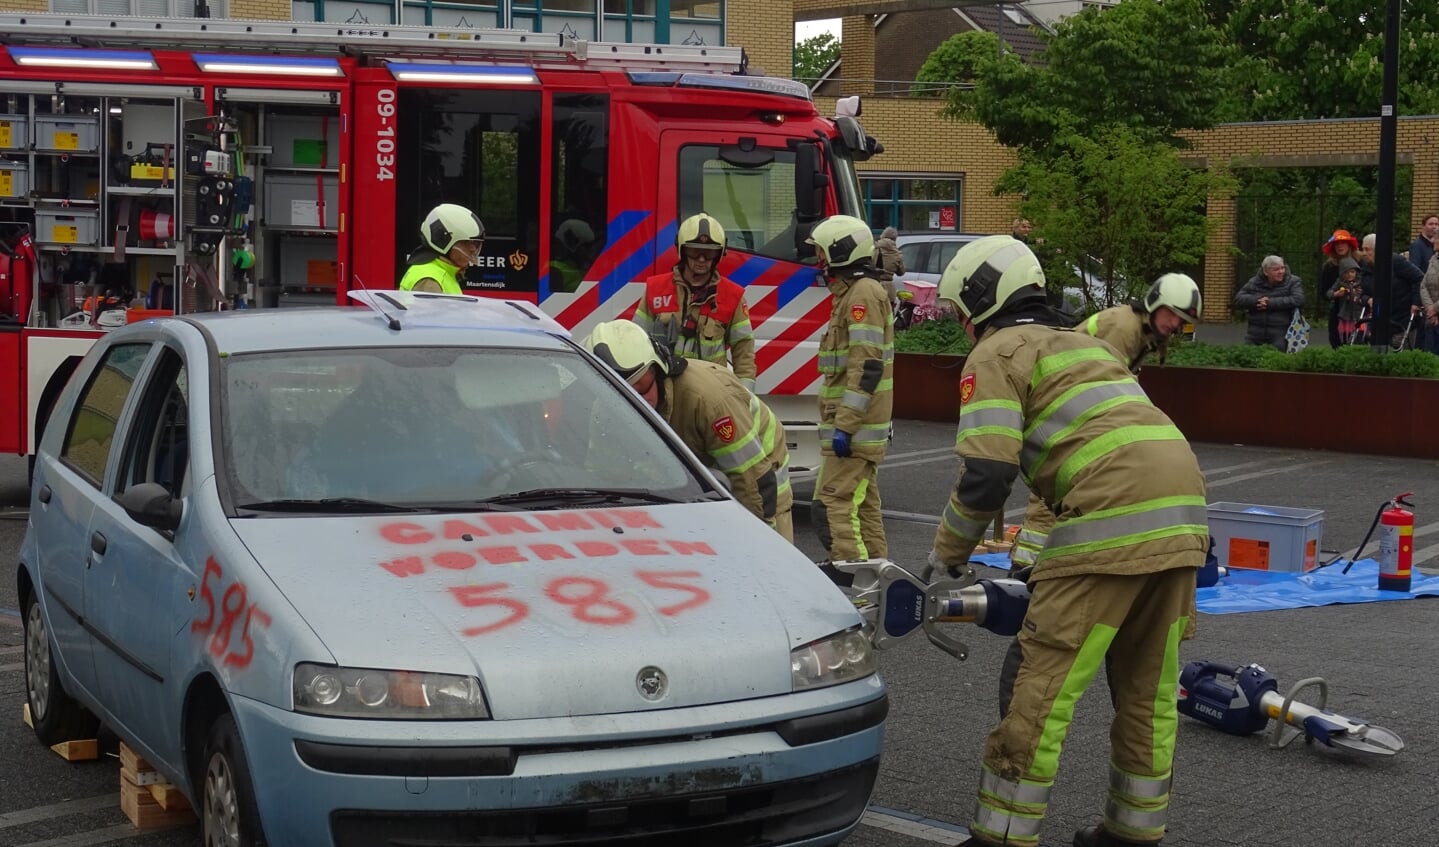 Brandweer Maartensdijk gaf een demonstratie om een bekneld persoon uit een auto te bevrijden. De brandweer gaf toelichting op alle acties, die werden uitgevoerd.[KD]